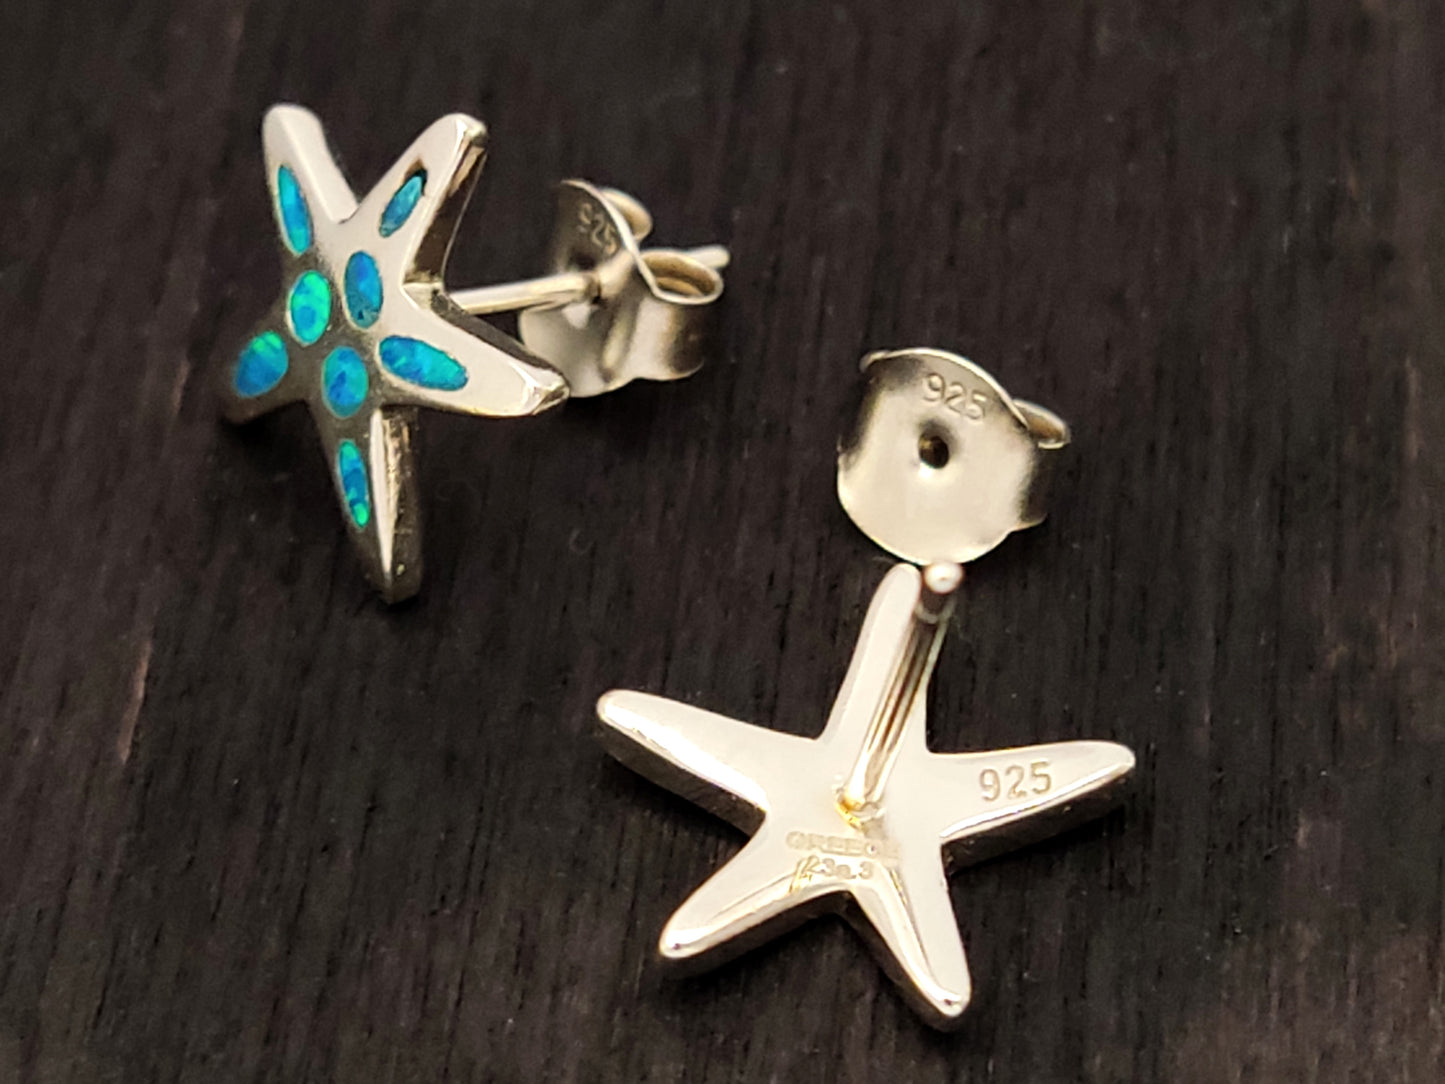 Starfish Blue Opal Silver Stud Earrings 12mm